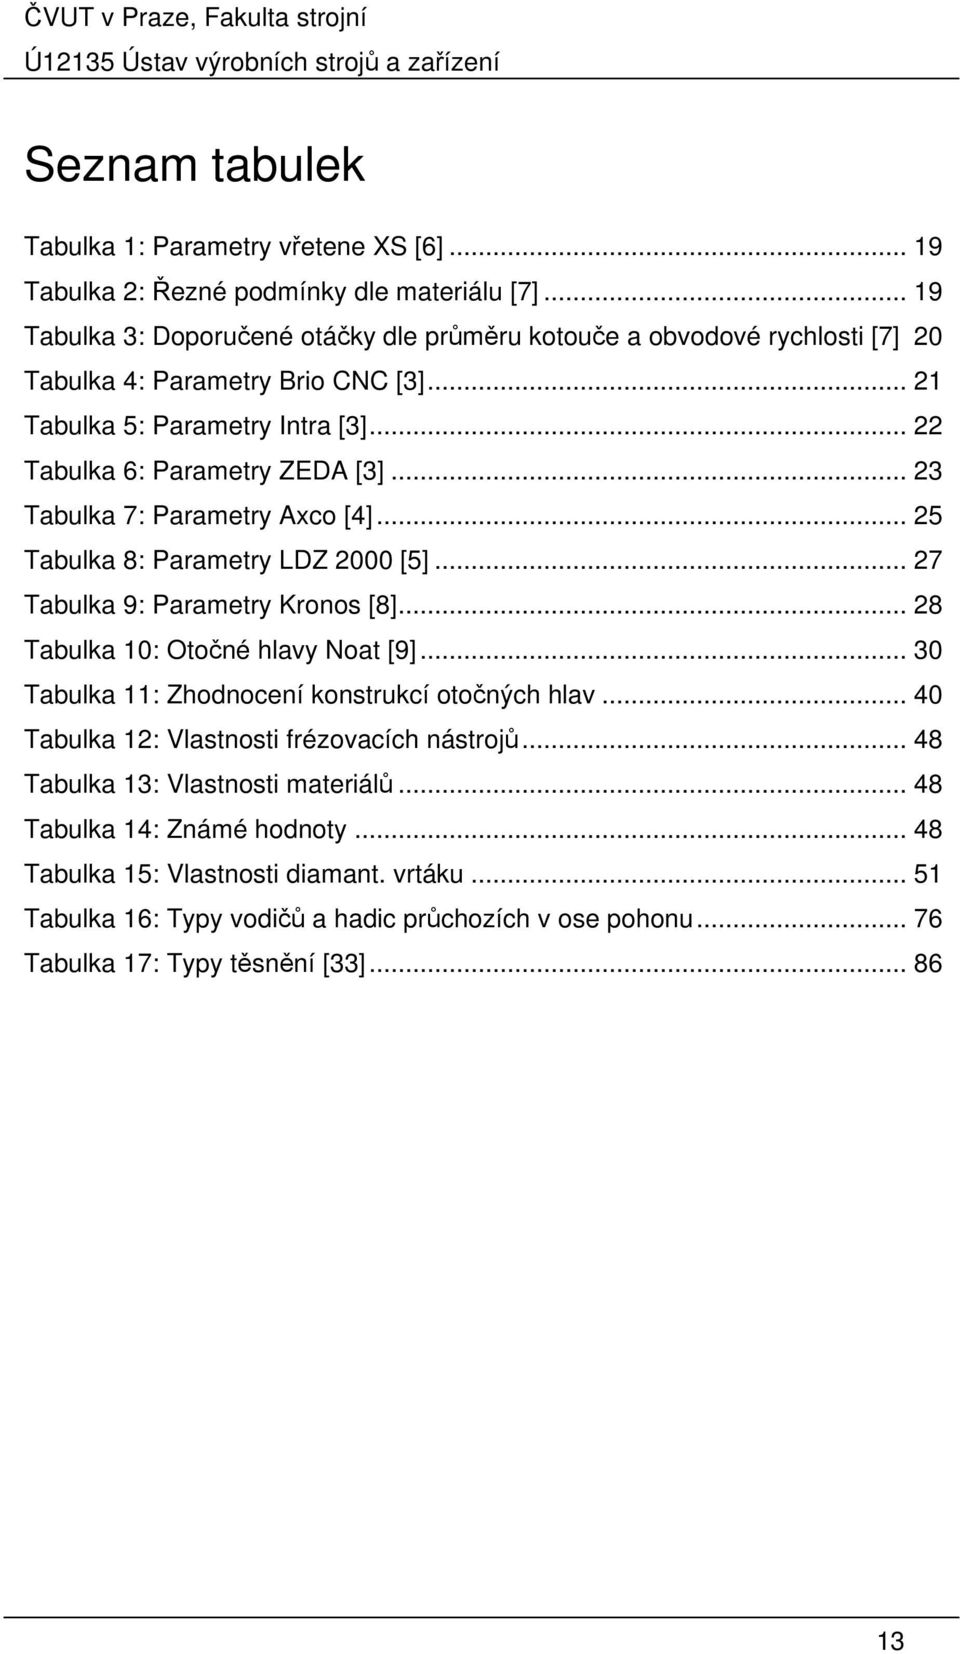 .. 23 Tabulka 7: Parametry Axco [4]... 25 Tabulka 8: Parametry LDZ 2000 [5]... 27 Tabulka 9: Parametry Kronos [8]... 28 Tabulka 10: Otočné hlavy Noat [9].